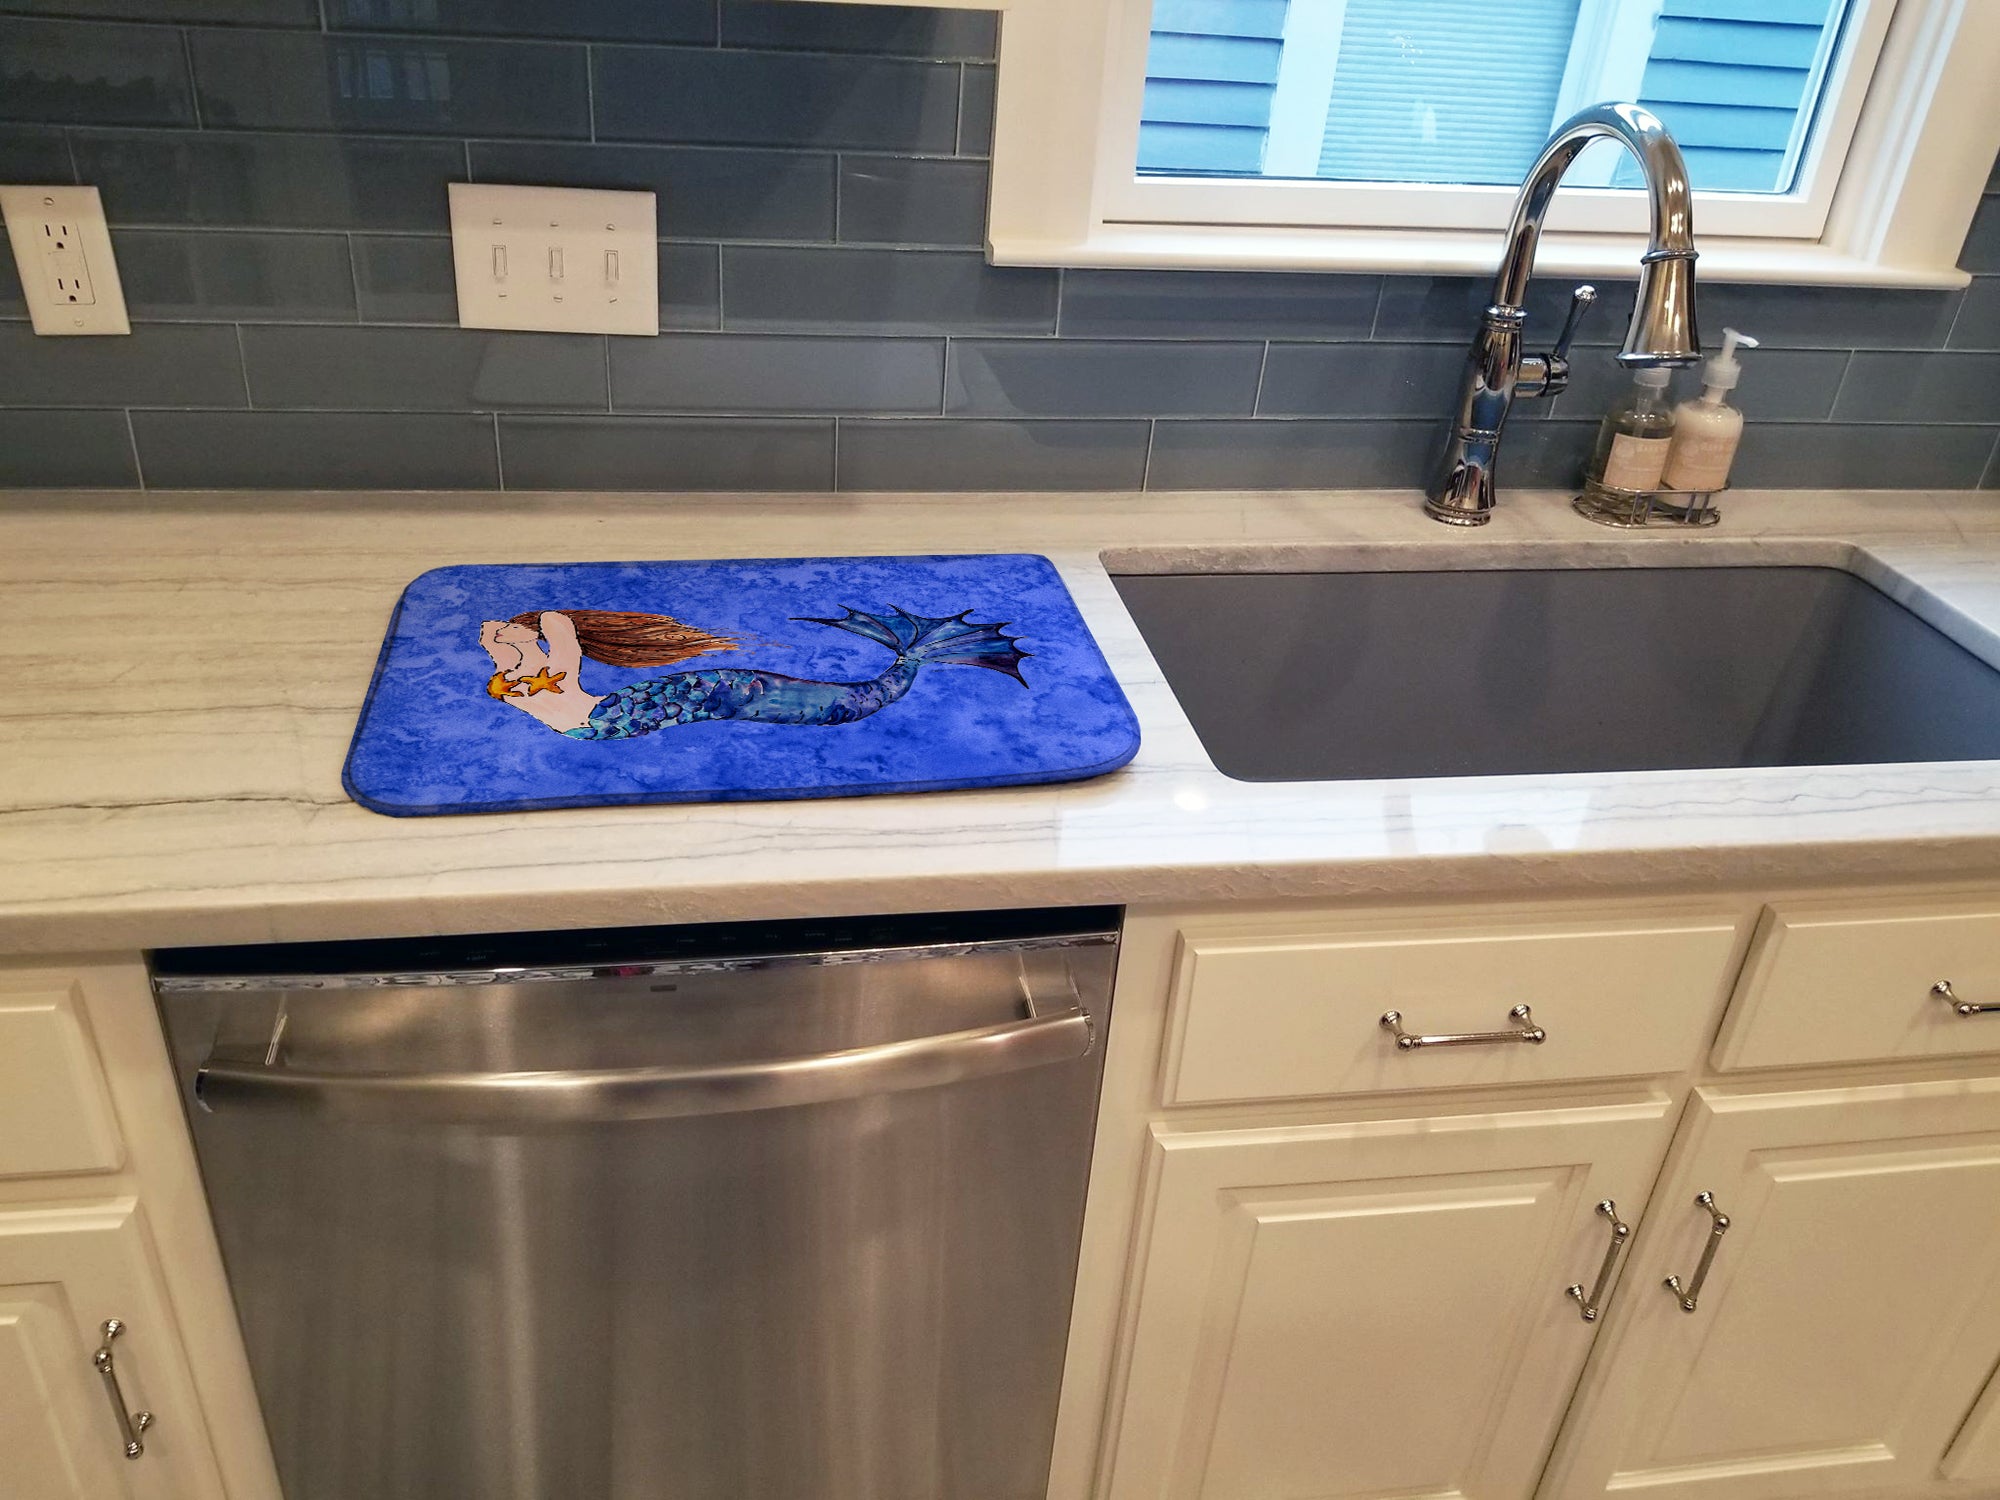 Brunette Mermaid on Blue Dish Drying Mat 8725DDM